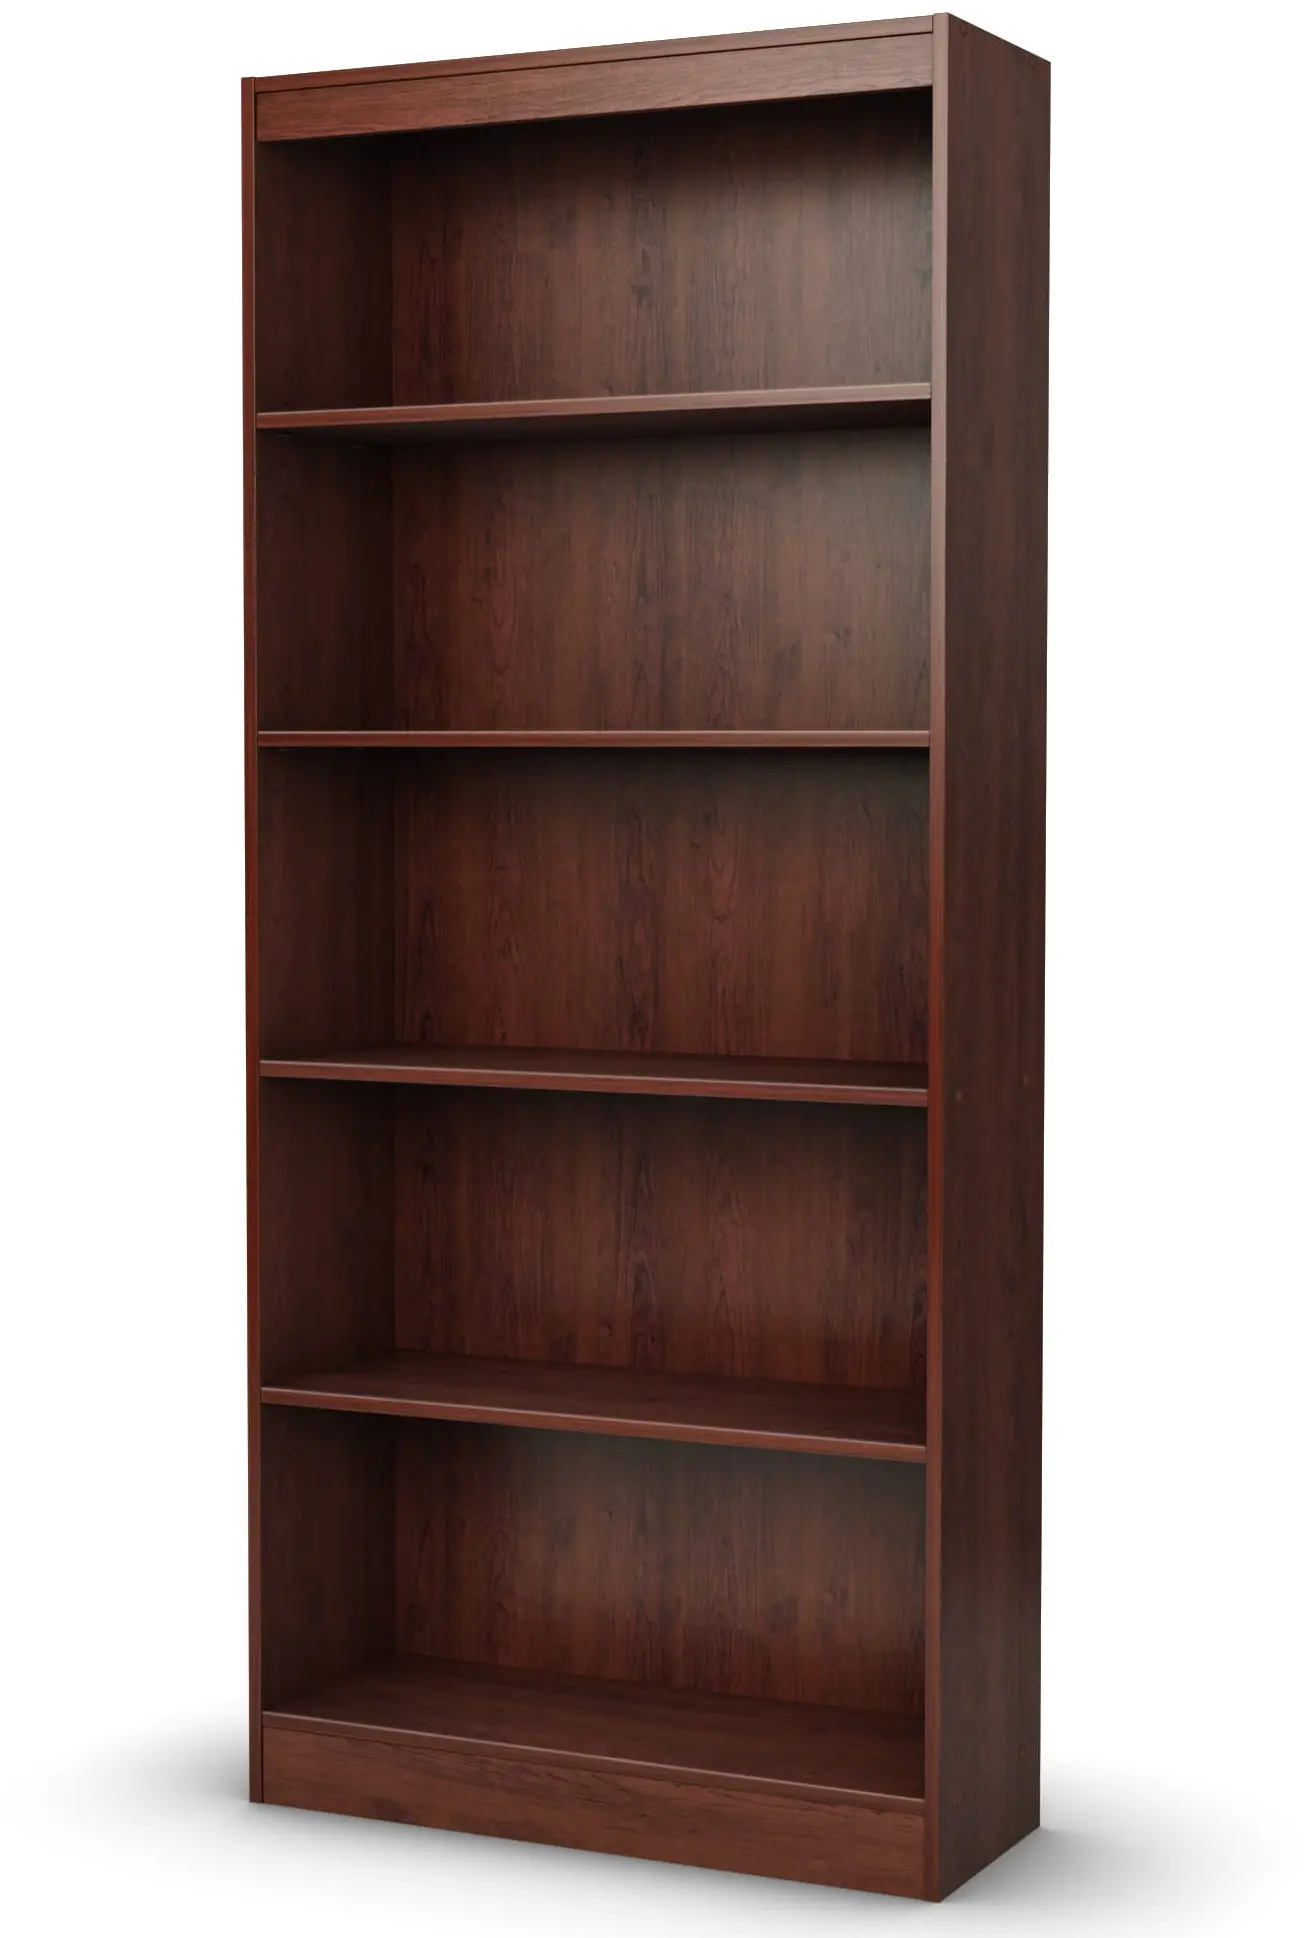 South Shore Axess Royal Cherry 5-Shelf Bookcase